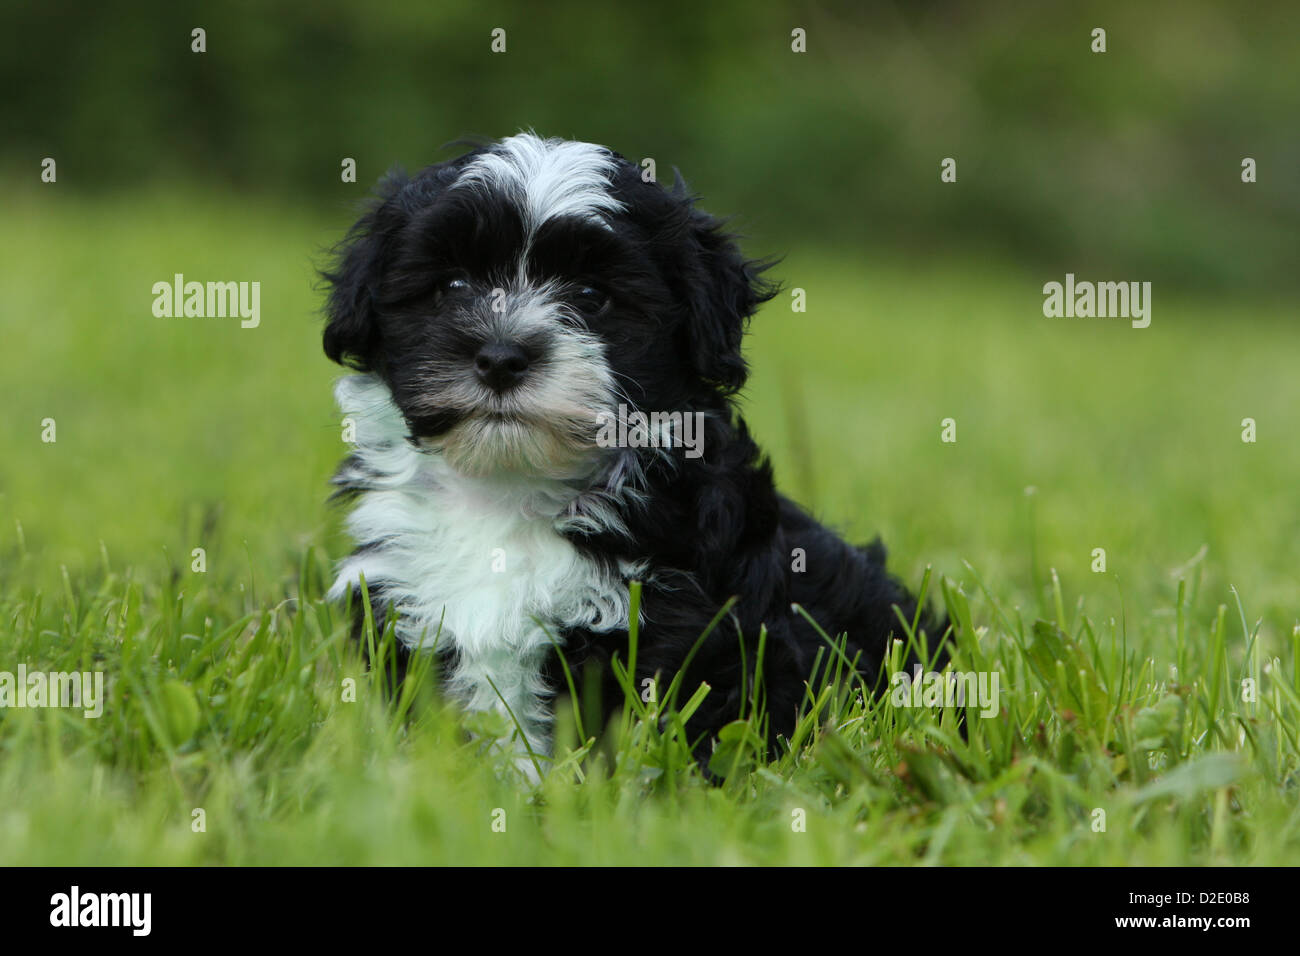 Dog Havanese / Bichon Havanais / Havaneser puppy (black and white) sitting in the grass Stock Photo